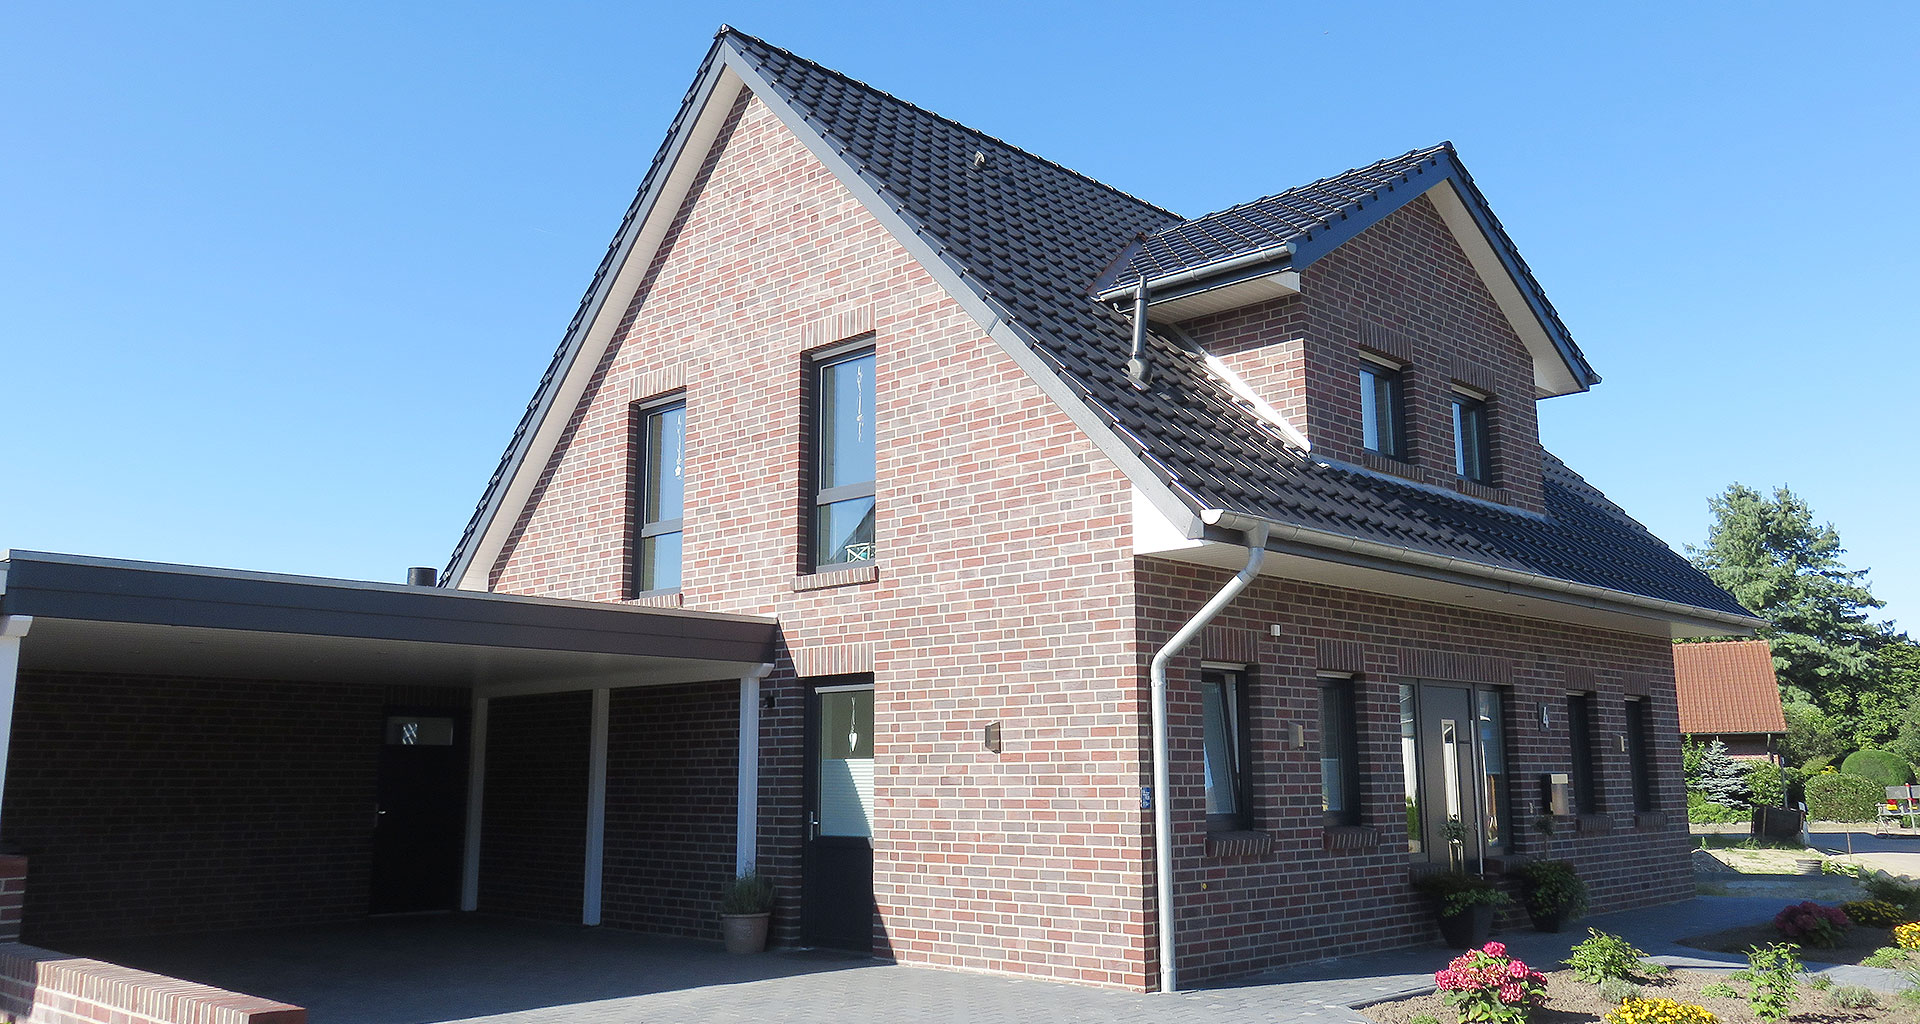 Einfamilienhauses rechte Seite Carport in Grafschaft Bentheim Bad Bentheim 2016